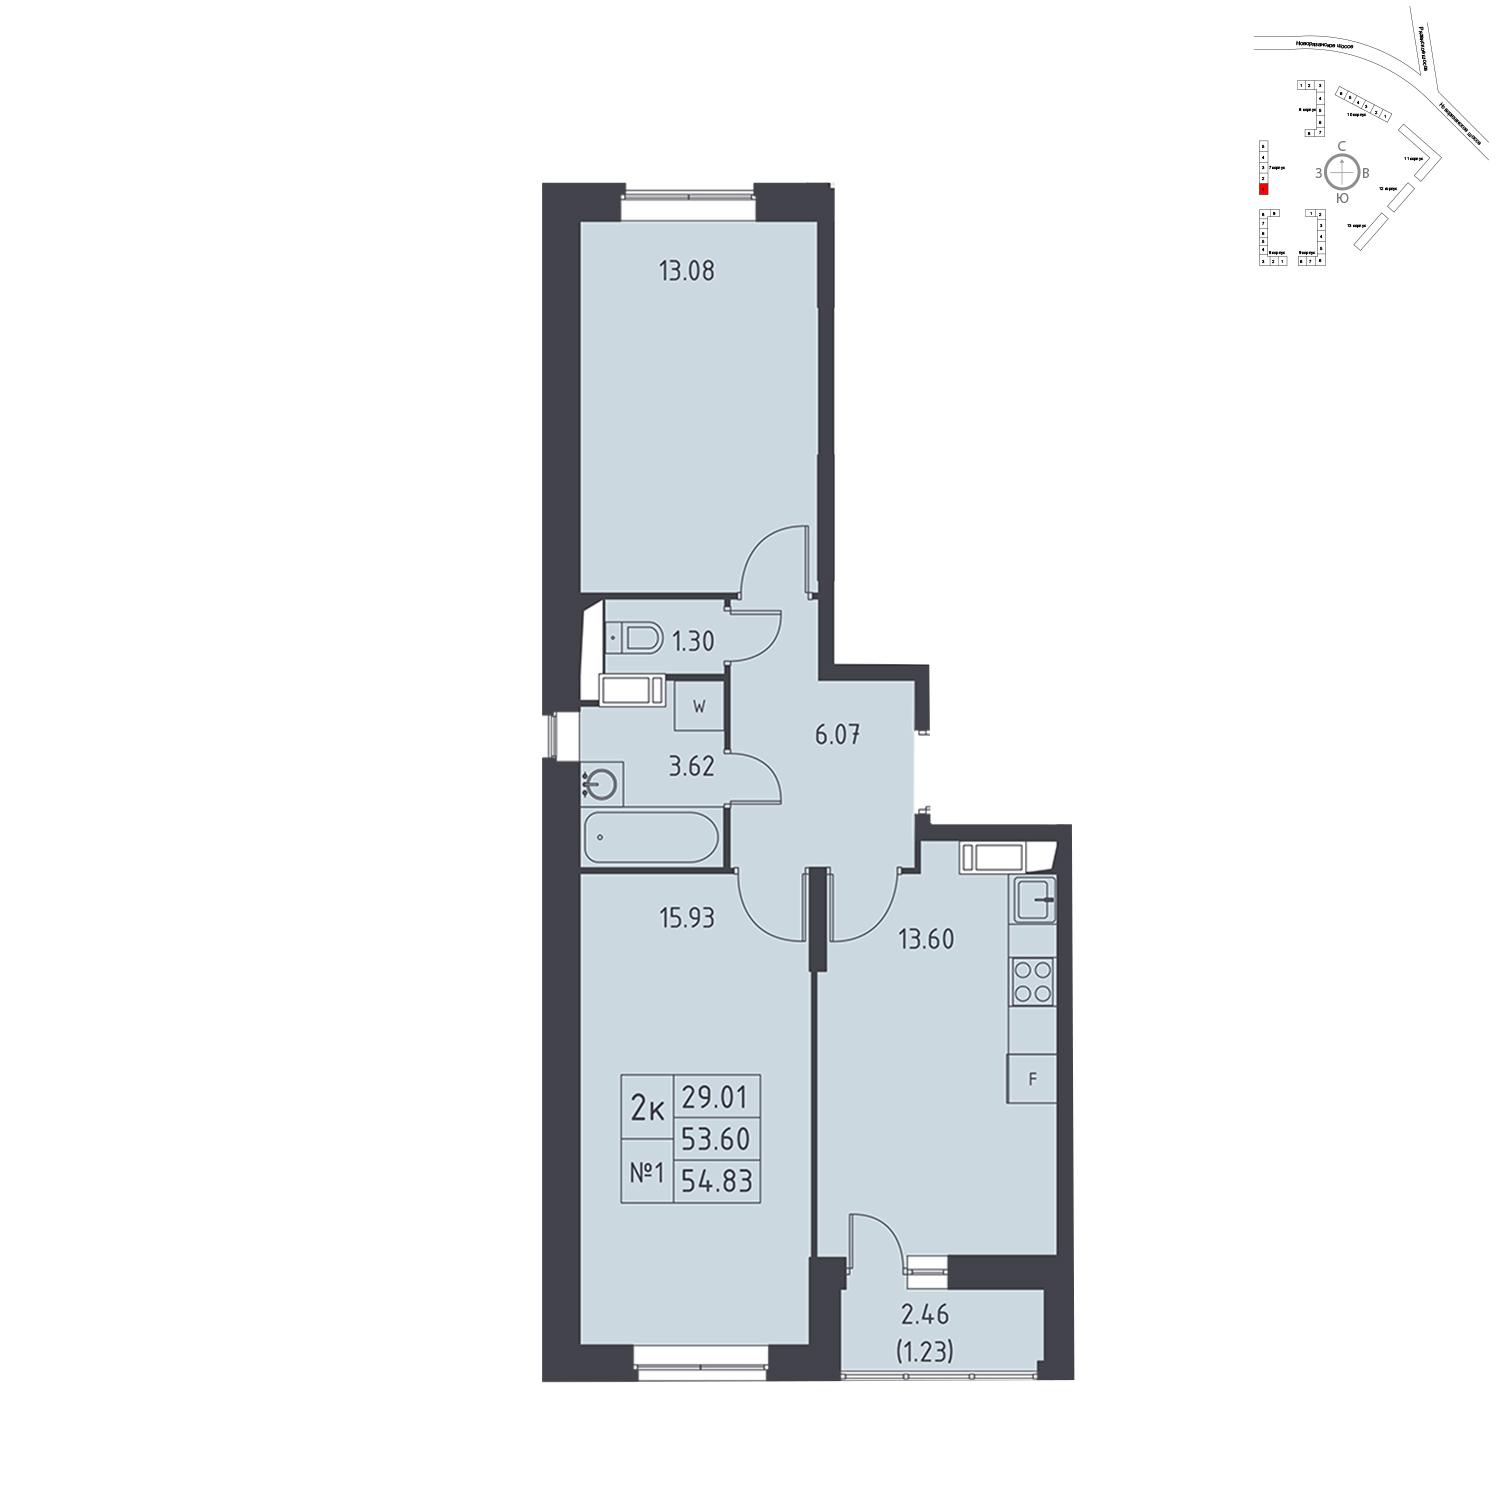 Продаётся 2-комнатная квартира в новостройке 54.8 кв.м. этаж 16/17 за 5 302 664 руб 